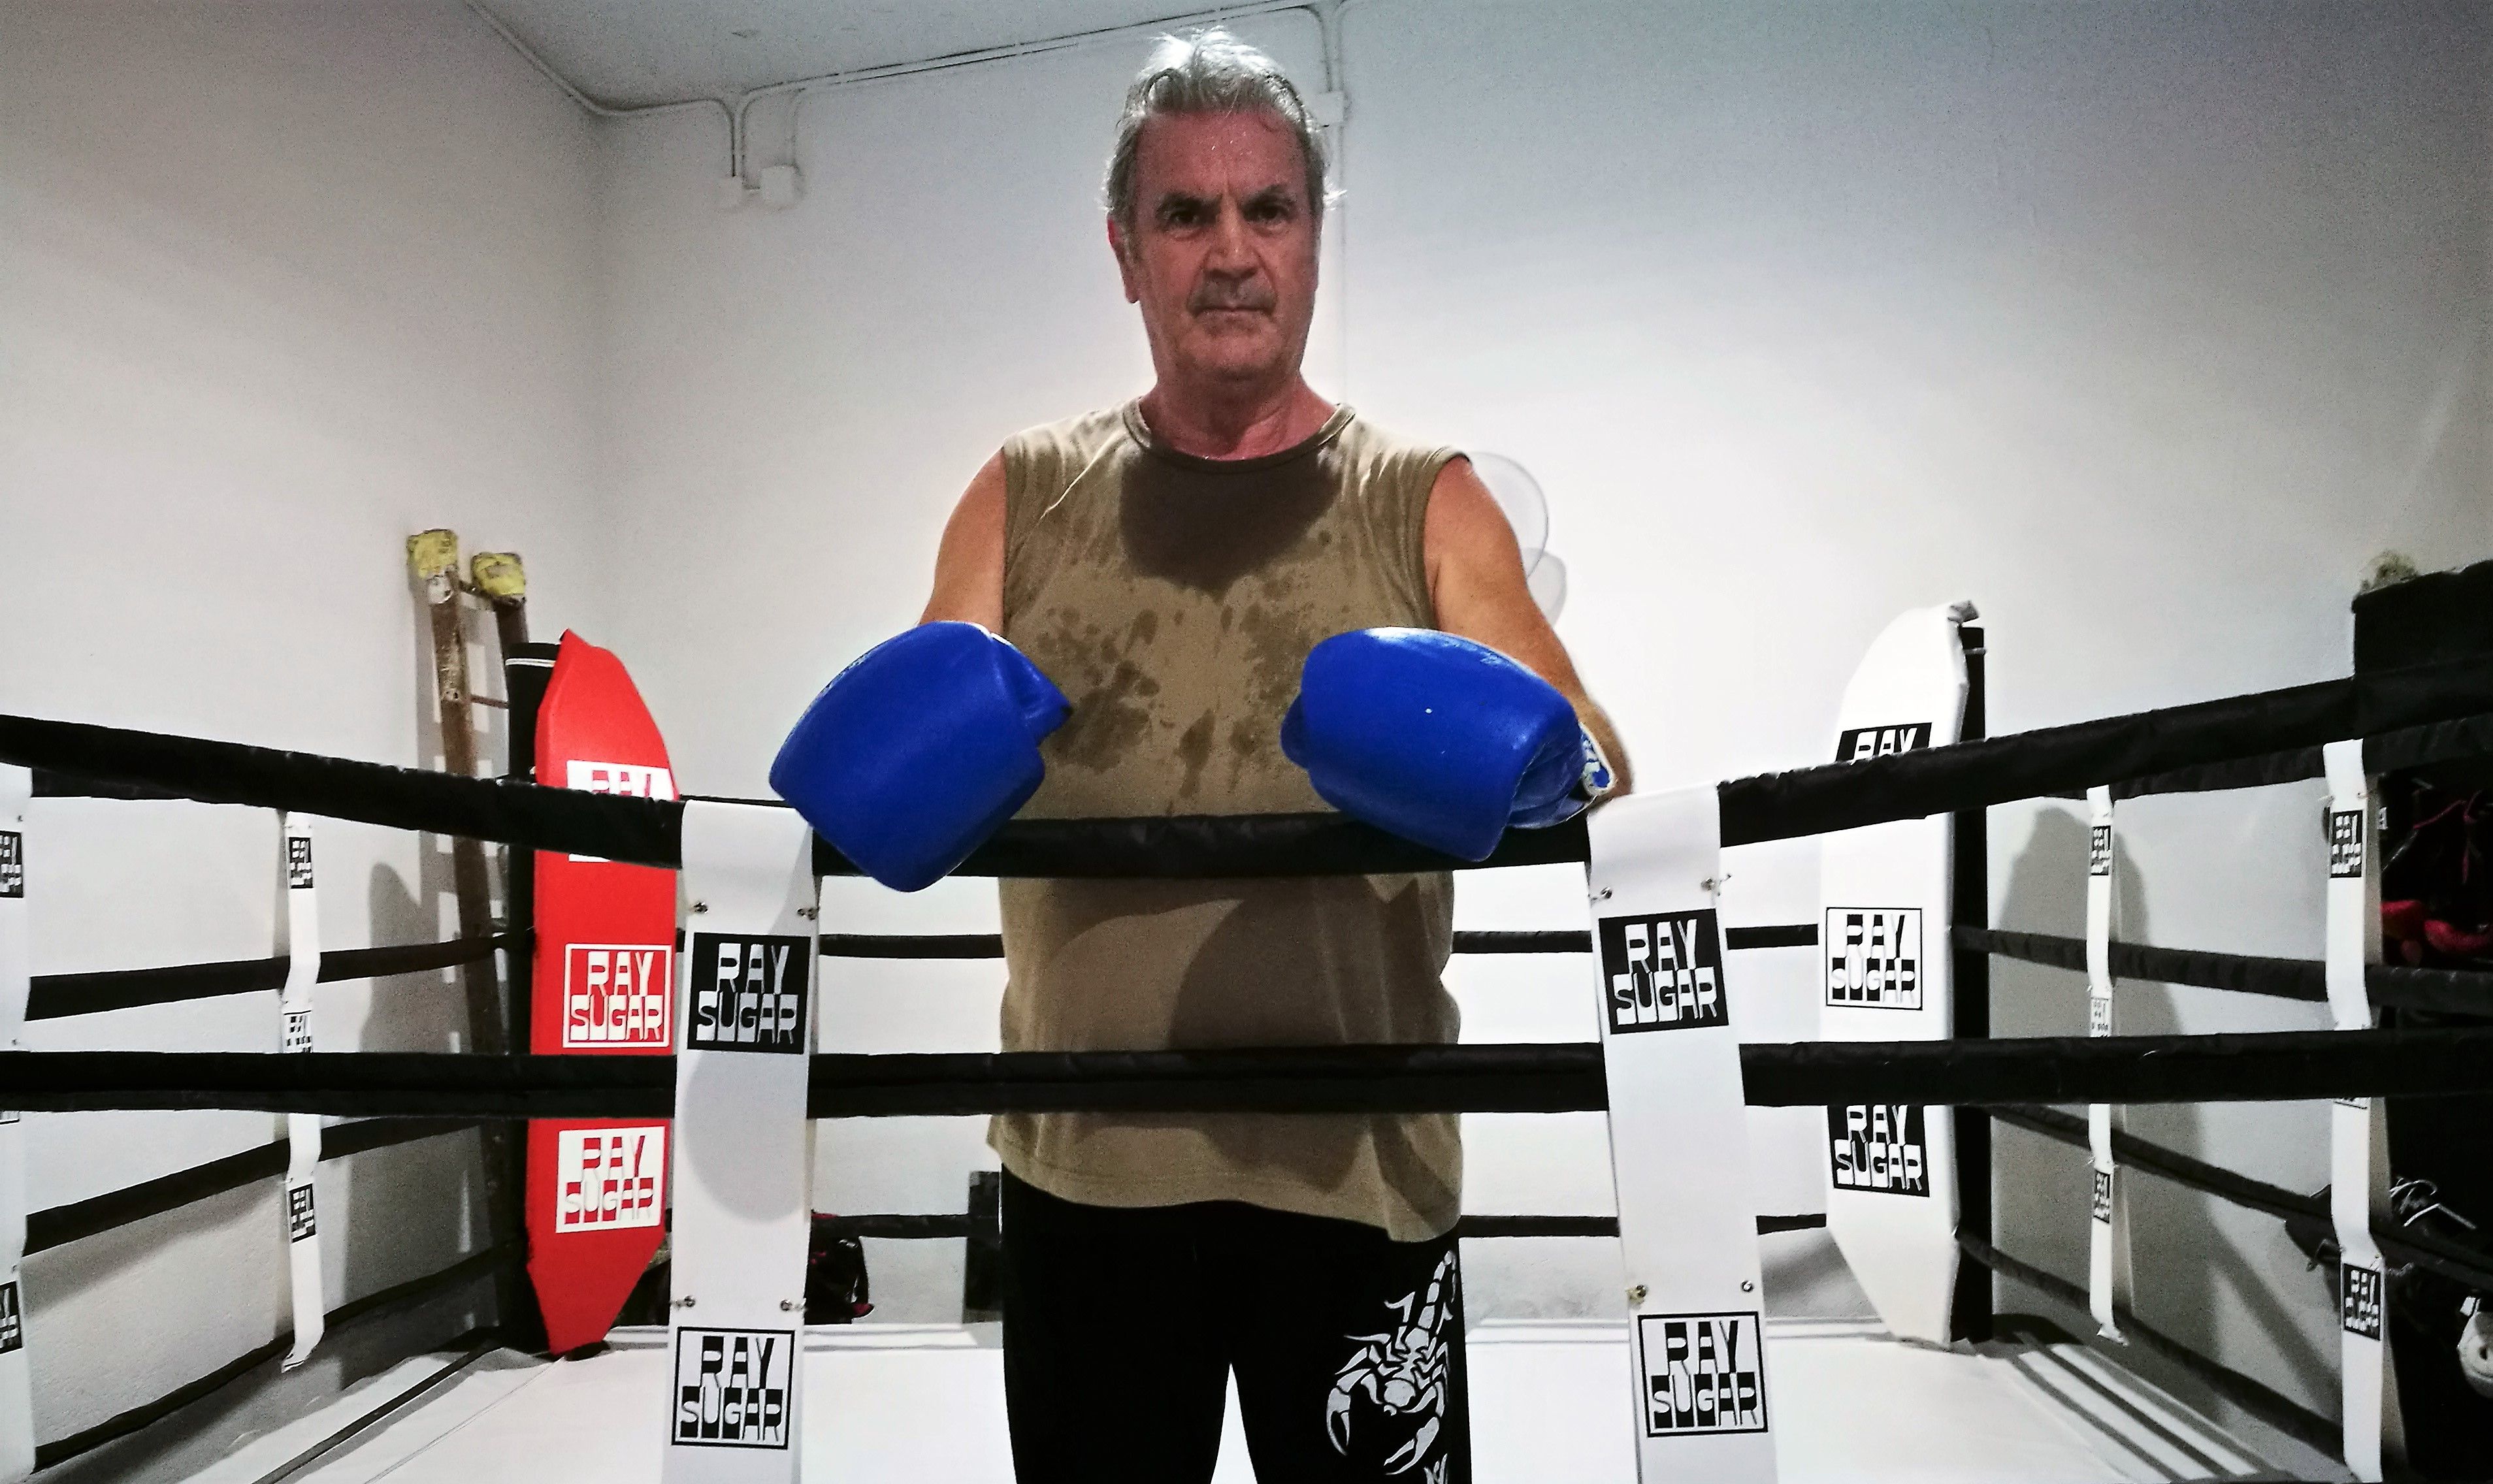 En Gregorio és de Rubí i practica boxa de dilluns a divendres. FOTO: Redacció